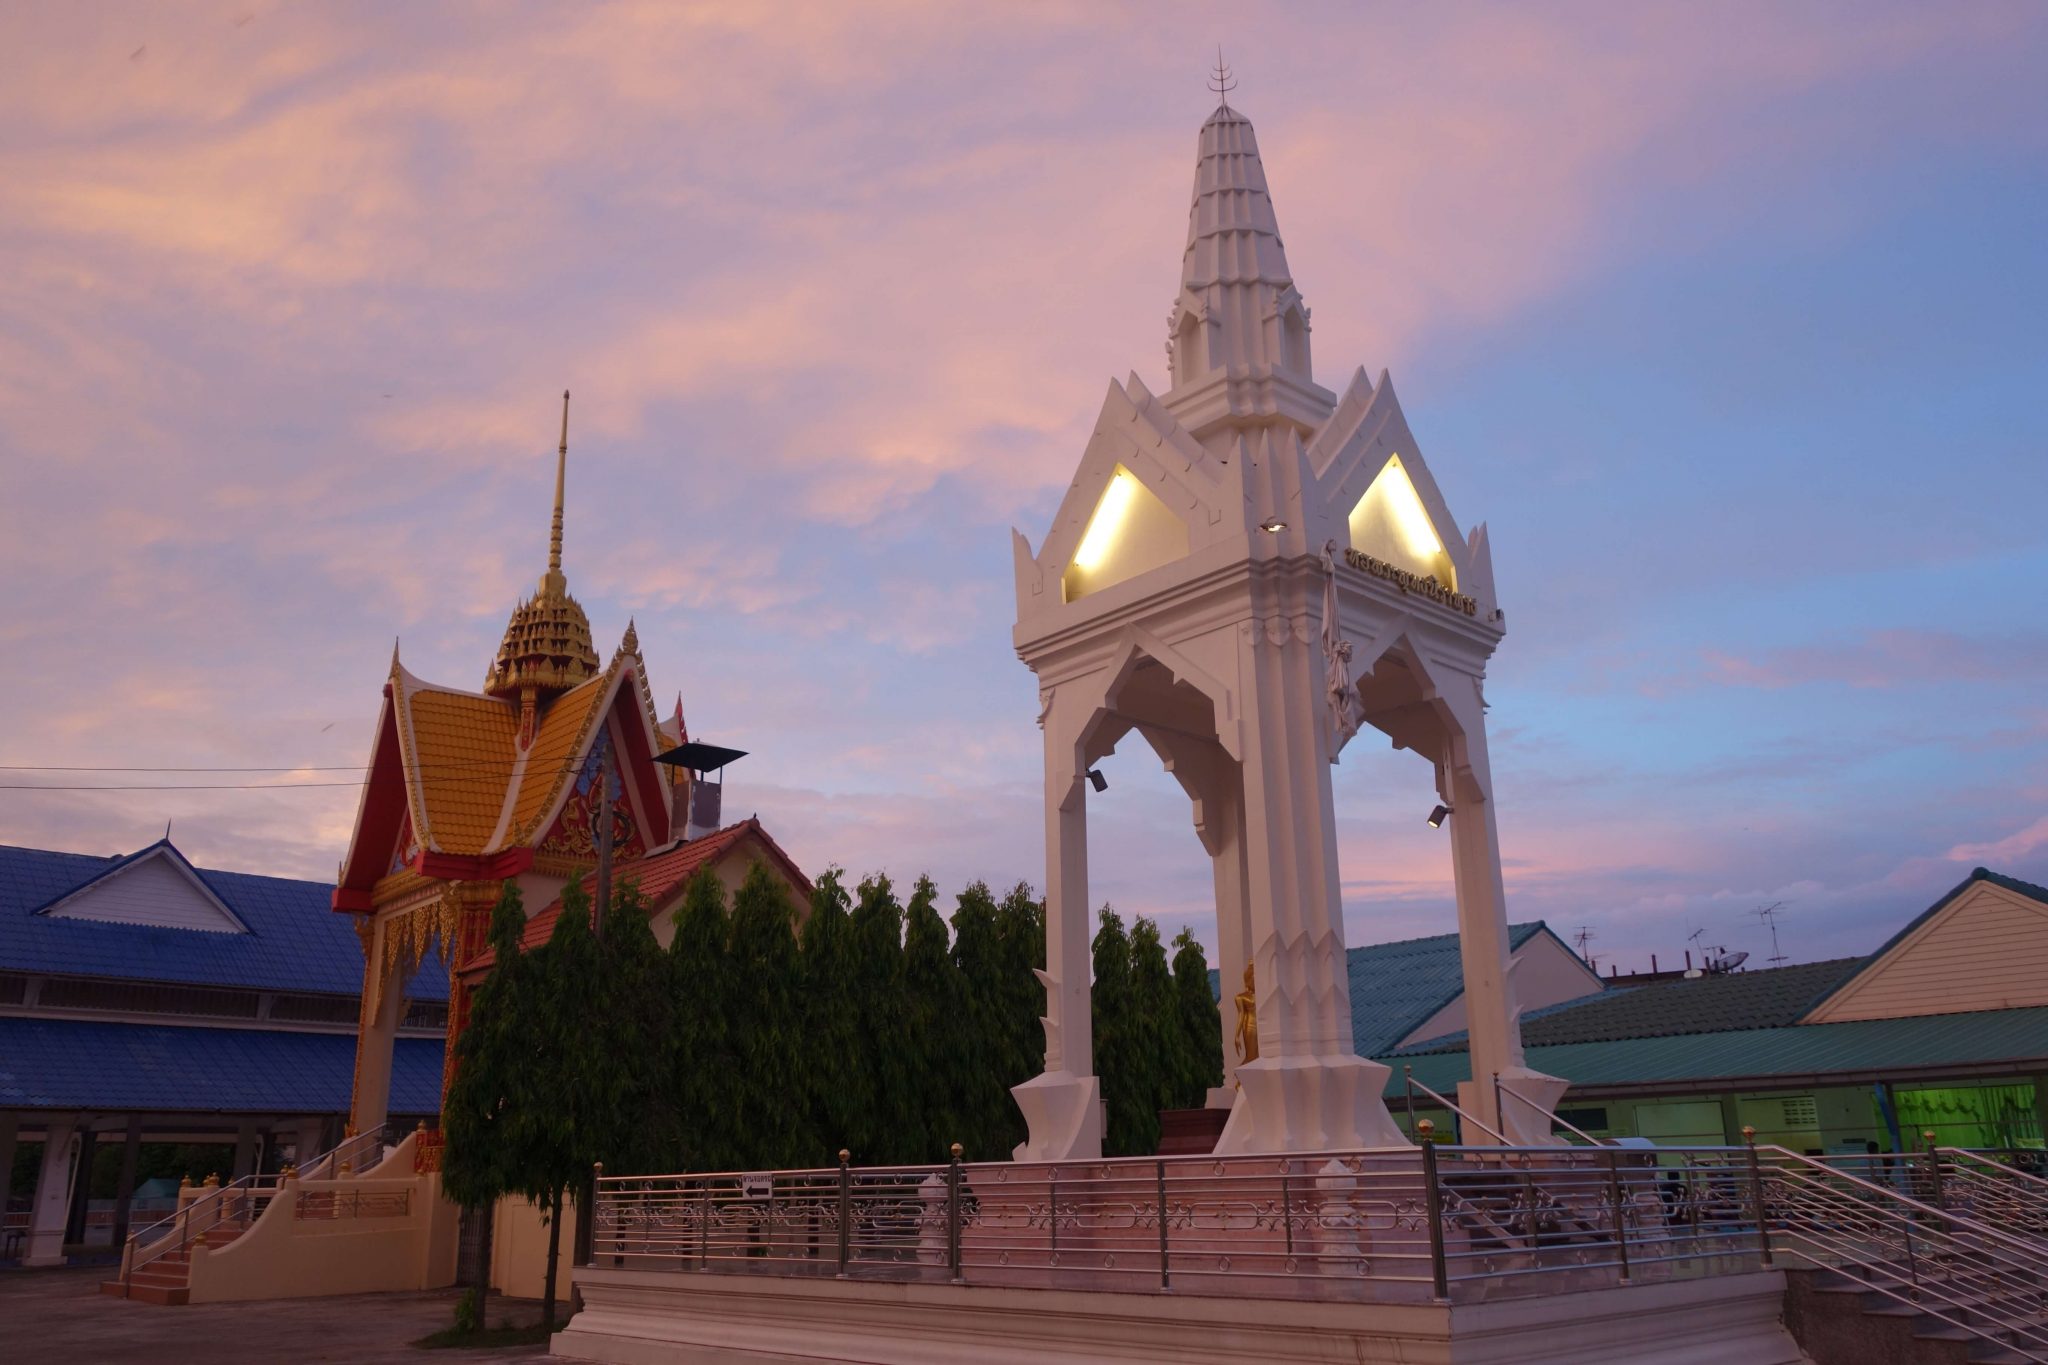 Surat Thani – Alltagsleben, Tempel und Nachtmärkte - travelbites